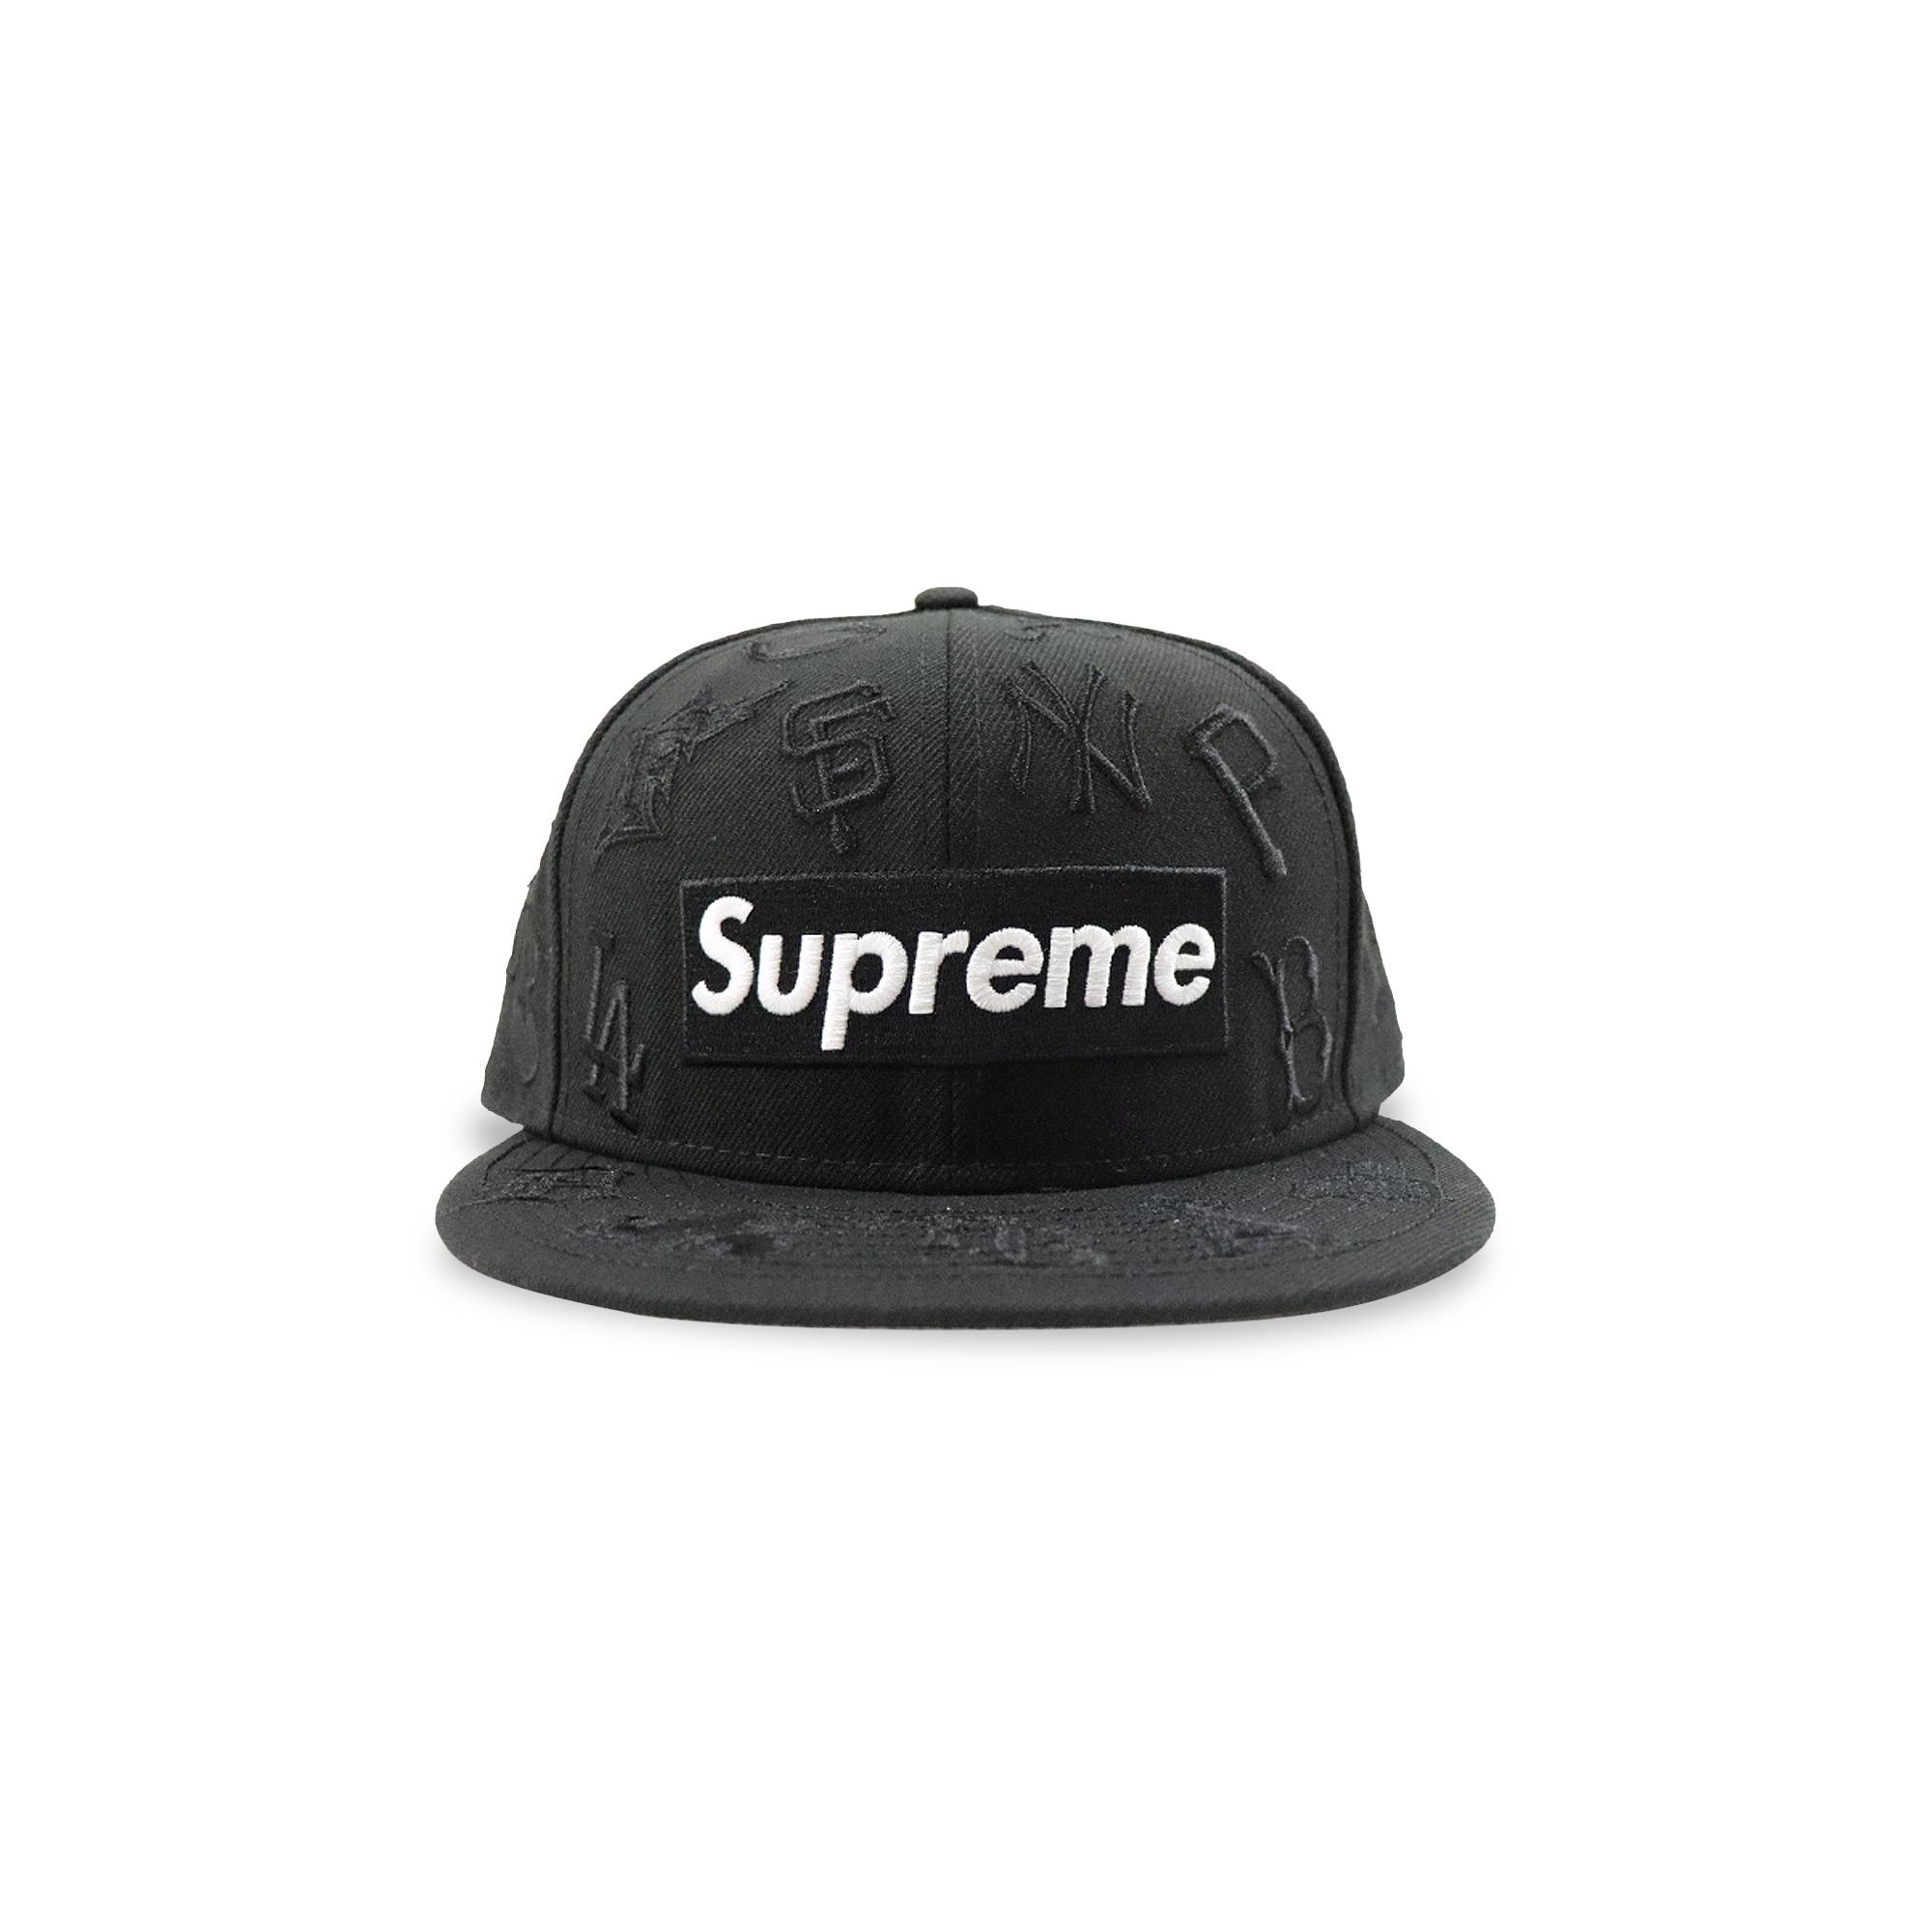 Supreme x MLB x New Era Hat 'Black' - 1